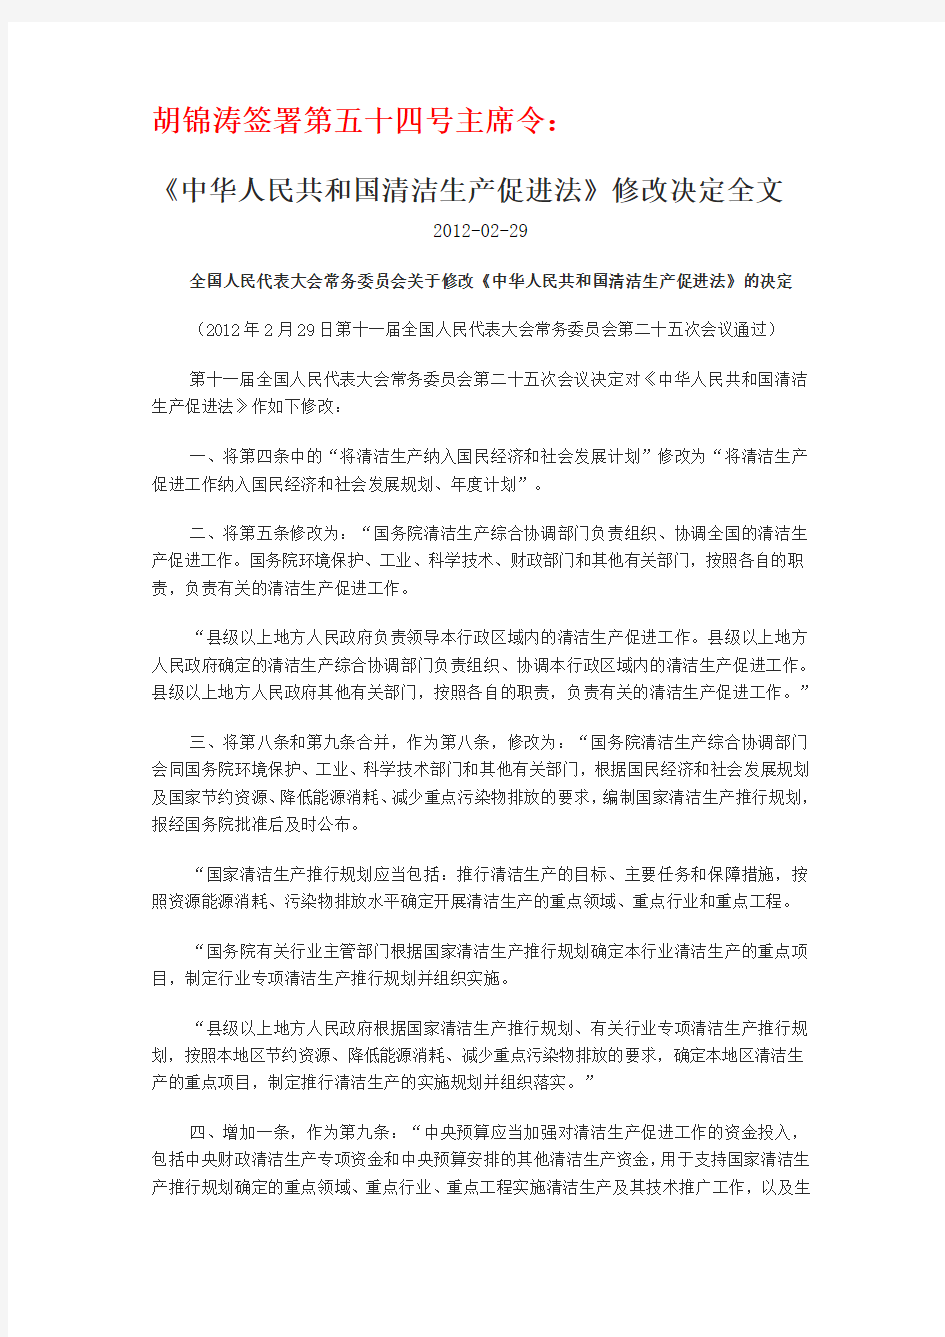 五十四号主席令——《中华人民共和国清洁生产促进法》修改决定